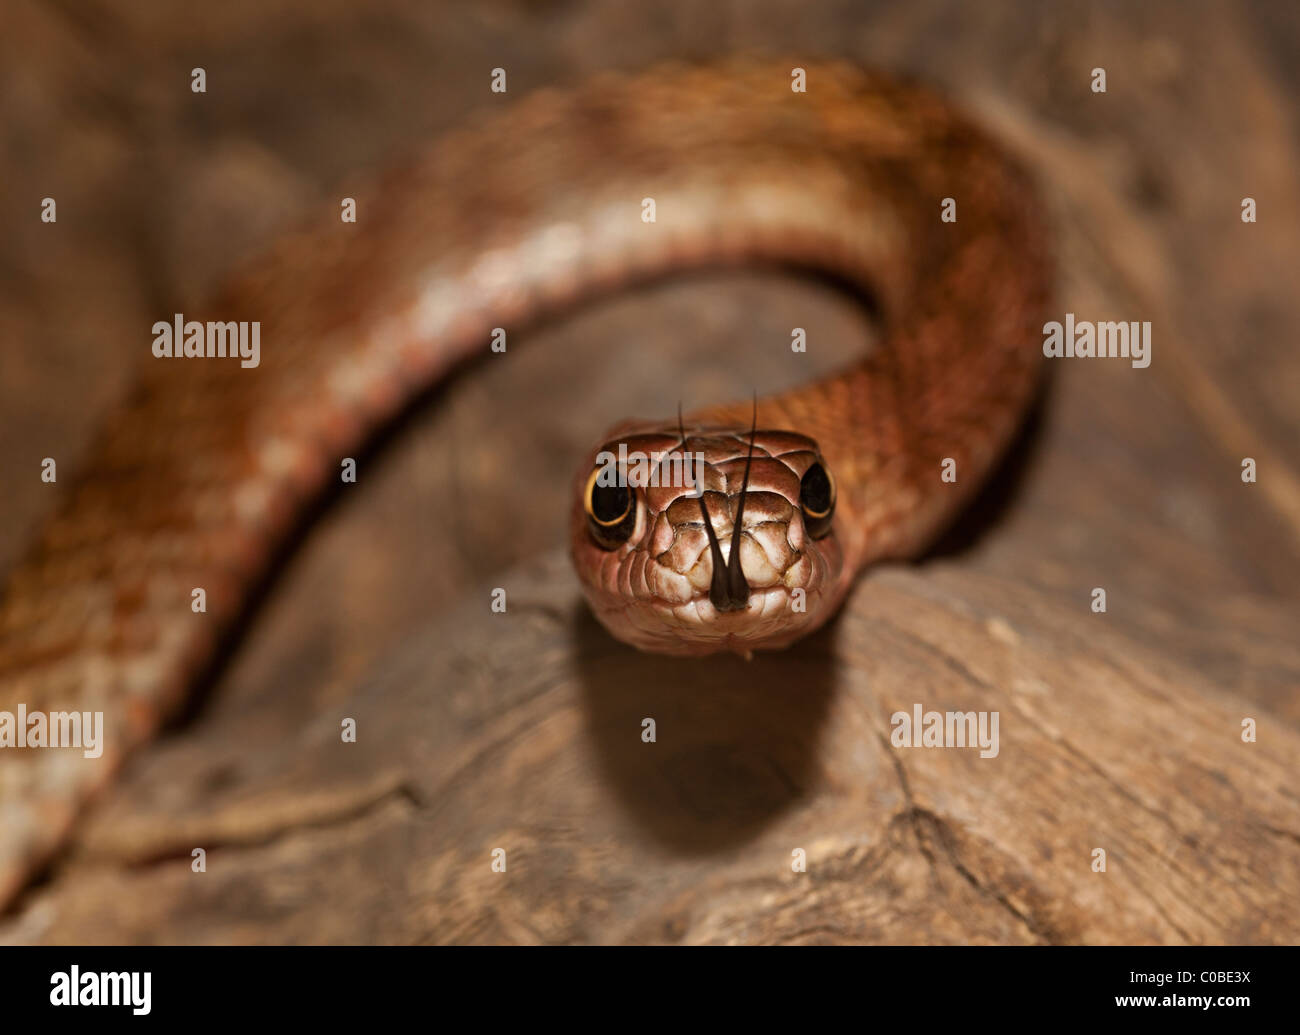 Abschreckung Schlange Masticophis Flagellum mit gespaltener Zunge USA Stockfoto